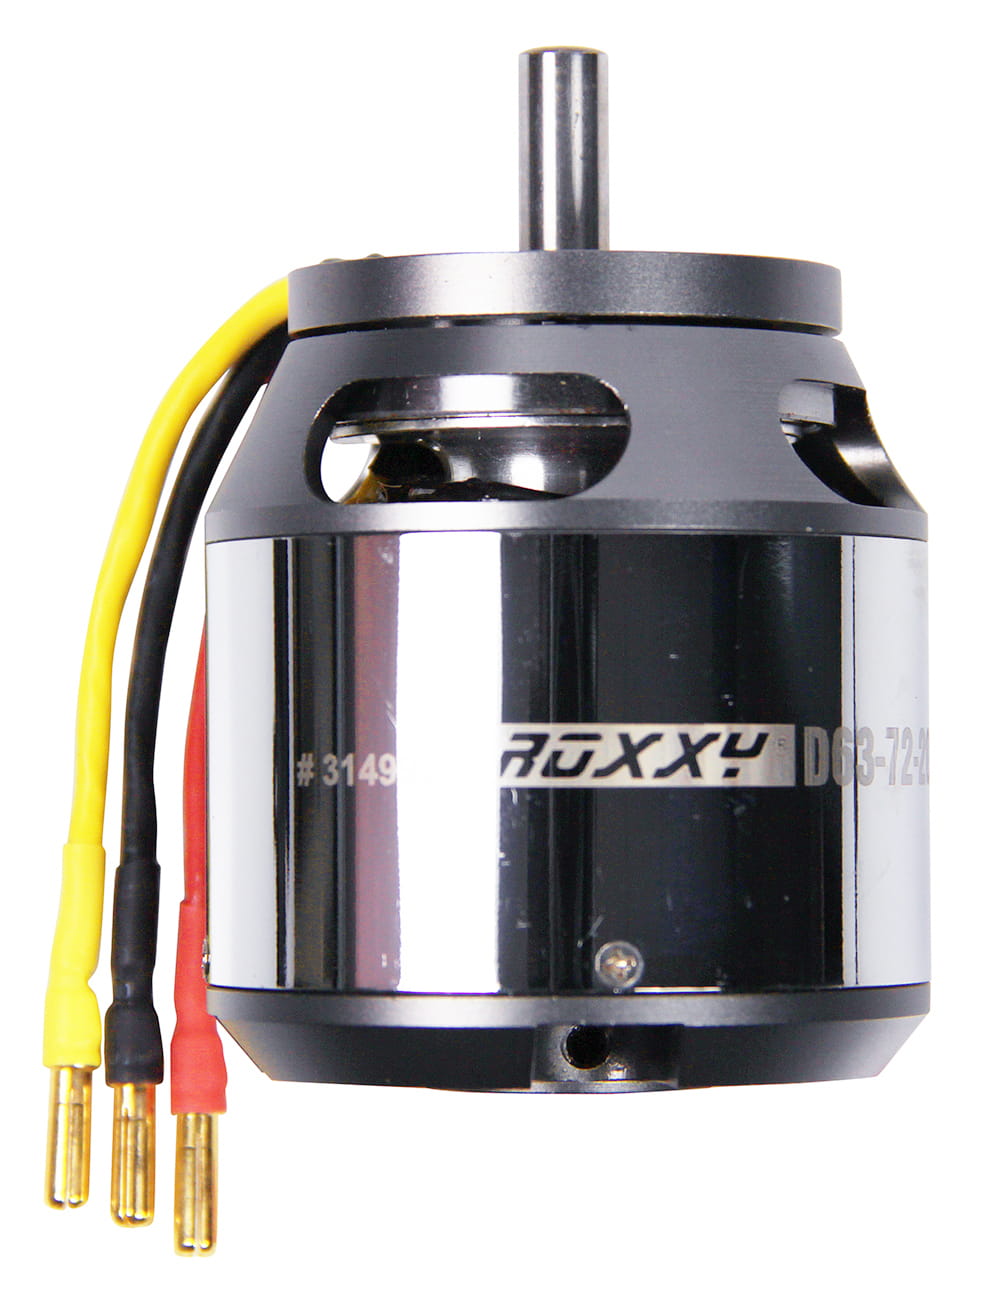 Multiplex ROXXY Brushless Motor BL Outrunner D63-72-200kV Air